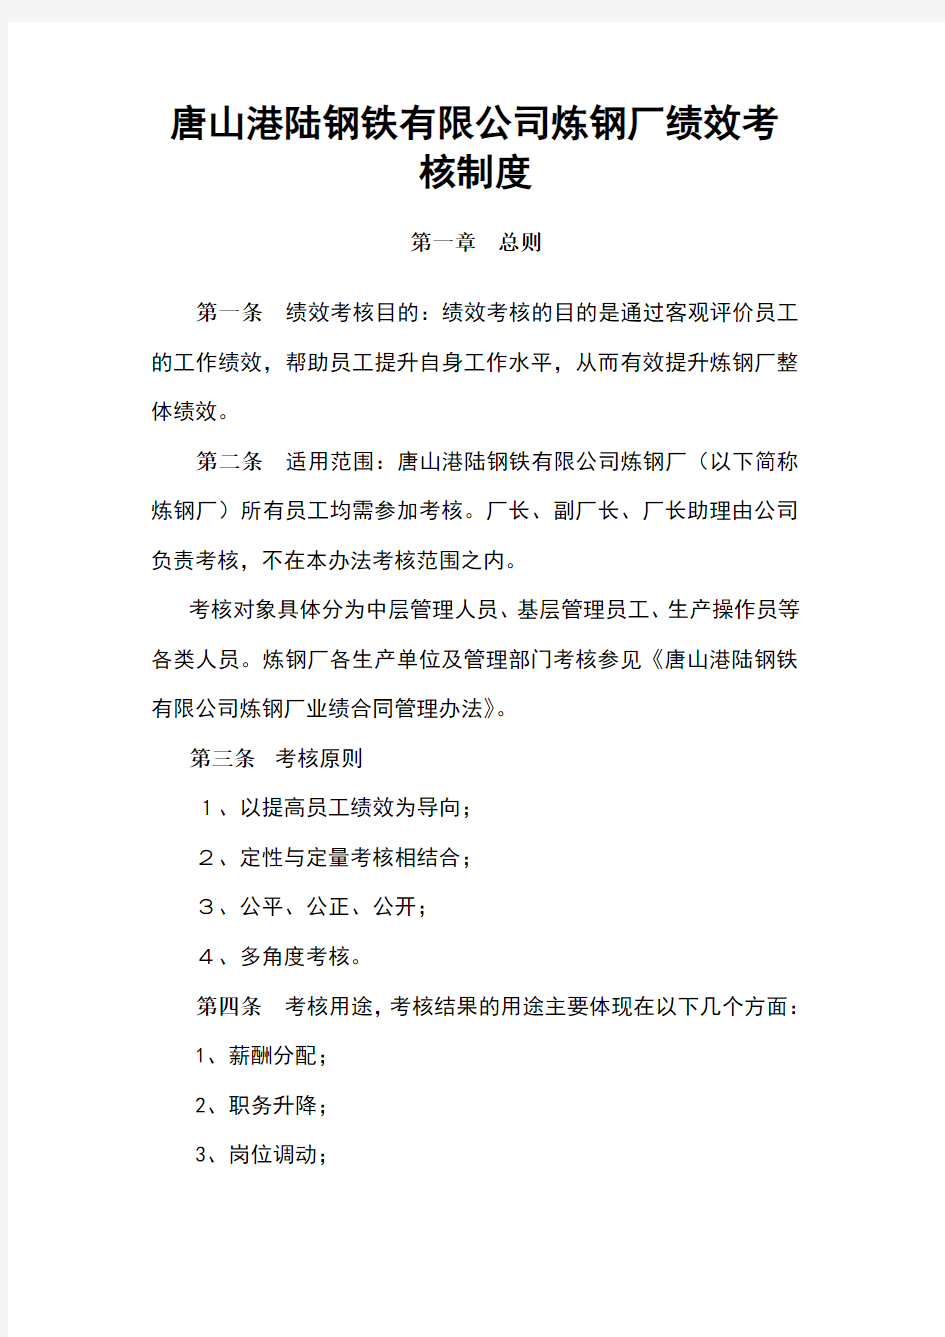 唐山港陆钢铁有限公司炼钢厂绩效考核制度(doc 26页)